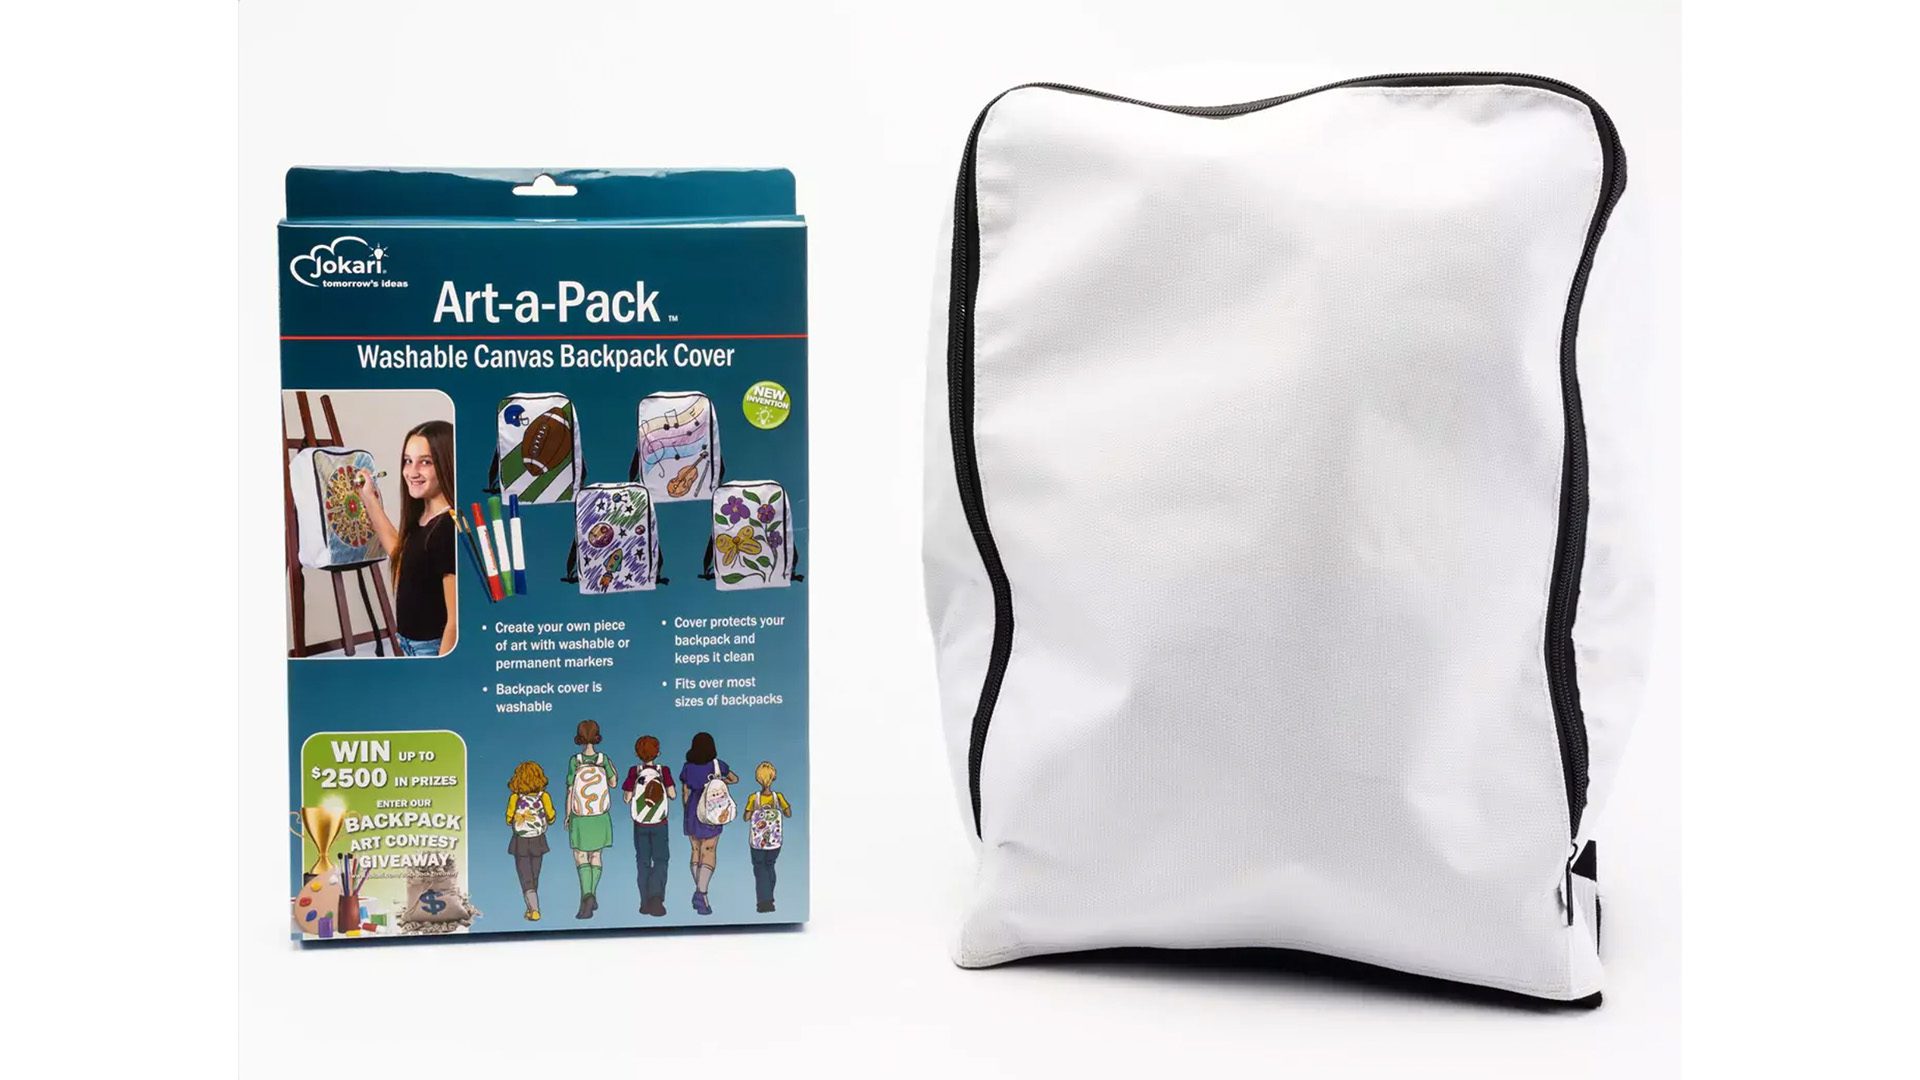 3. Art-A-Pack